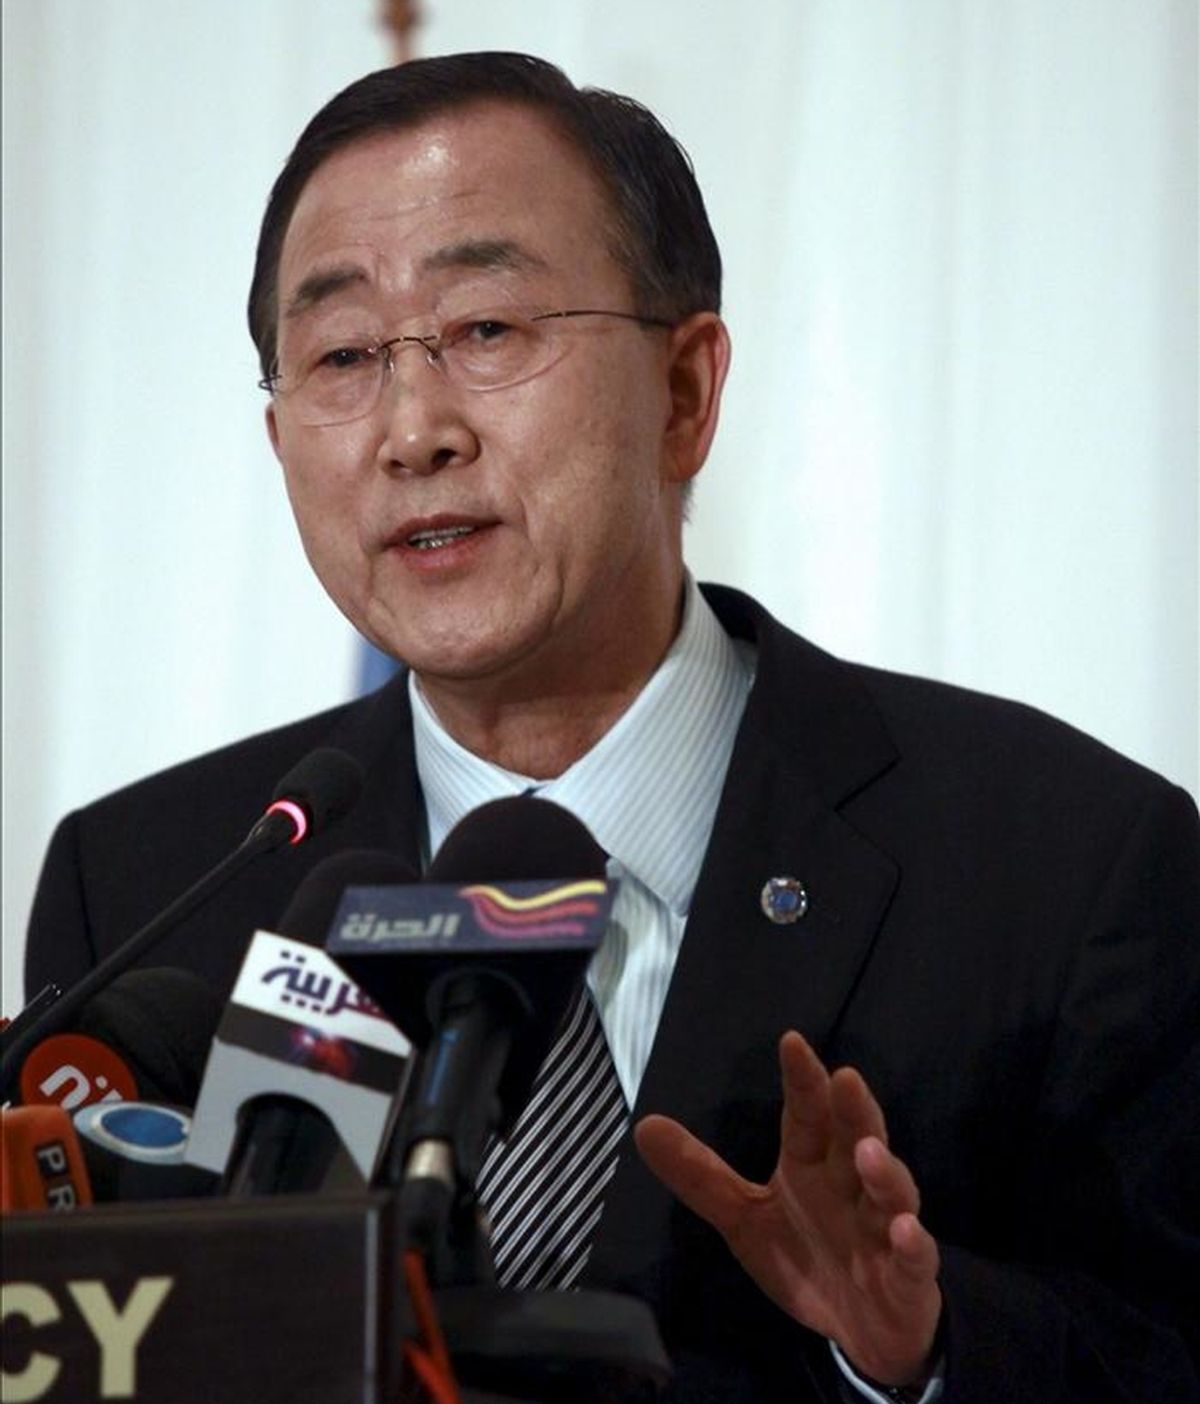 El secretario general de la ONU, Ban Ki-moon, reiteró su llamamiento al Gobierno sirio "para que cumpla con sus obligaciones internacionales de los derechos humanos". EFE/Archivo